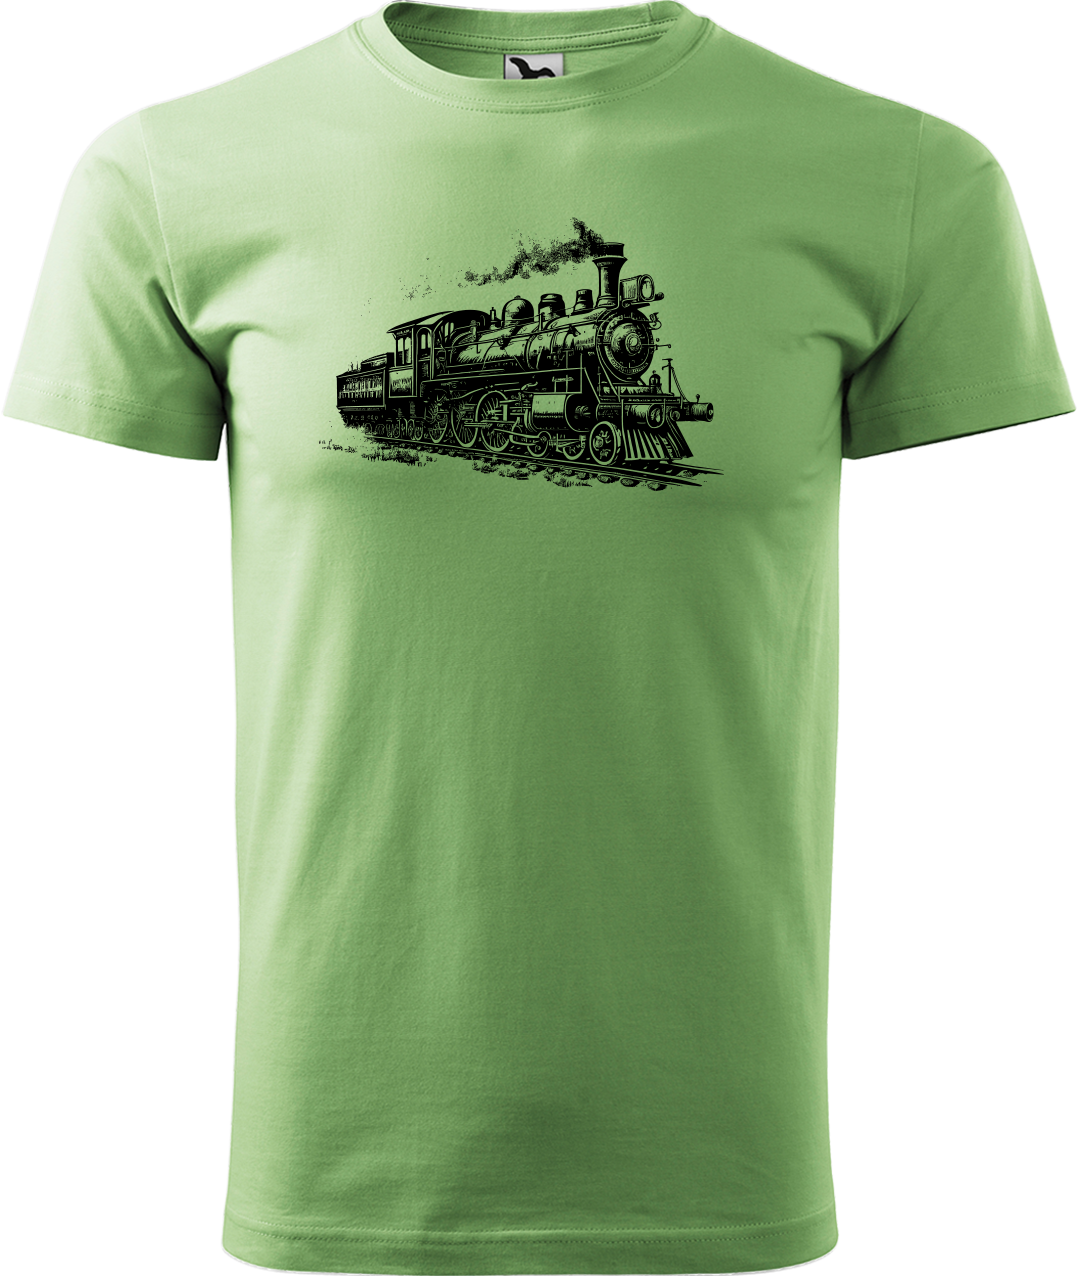 Tričko s vlakem - Stará lokomotiva Velikost: M, Barva: Trávově zelená (39)